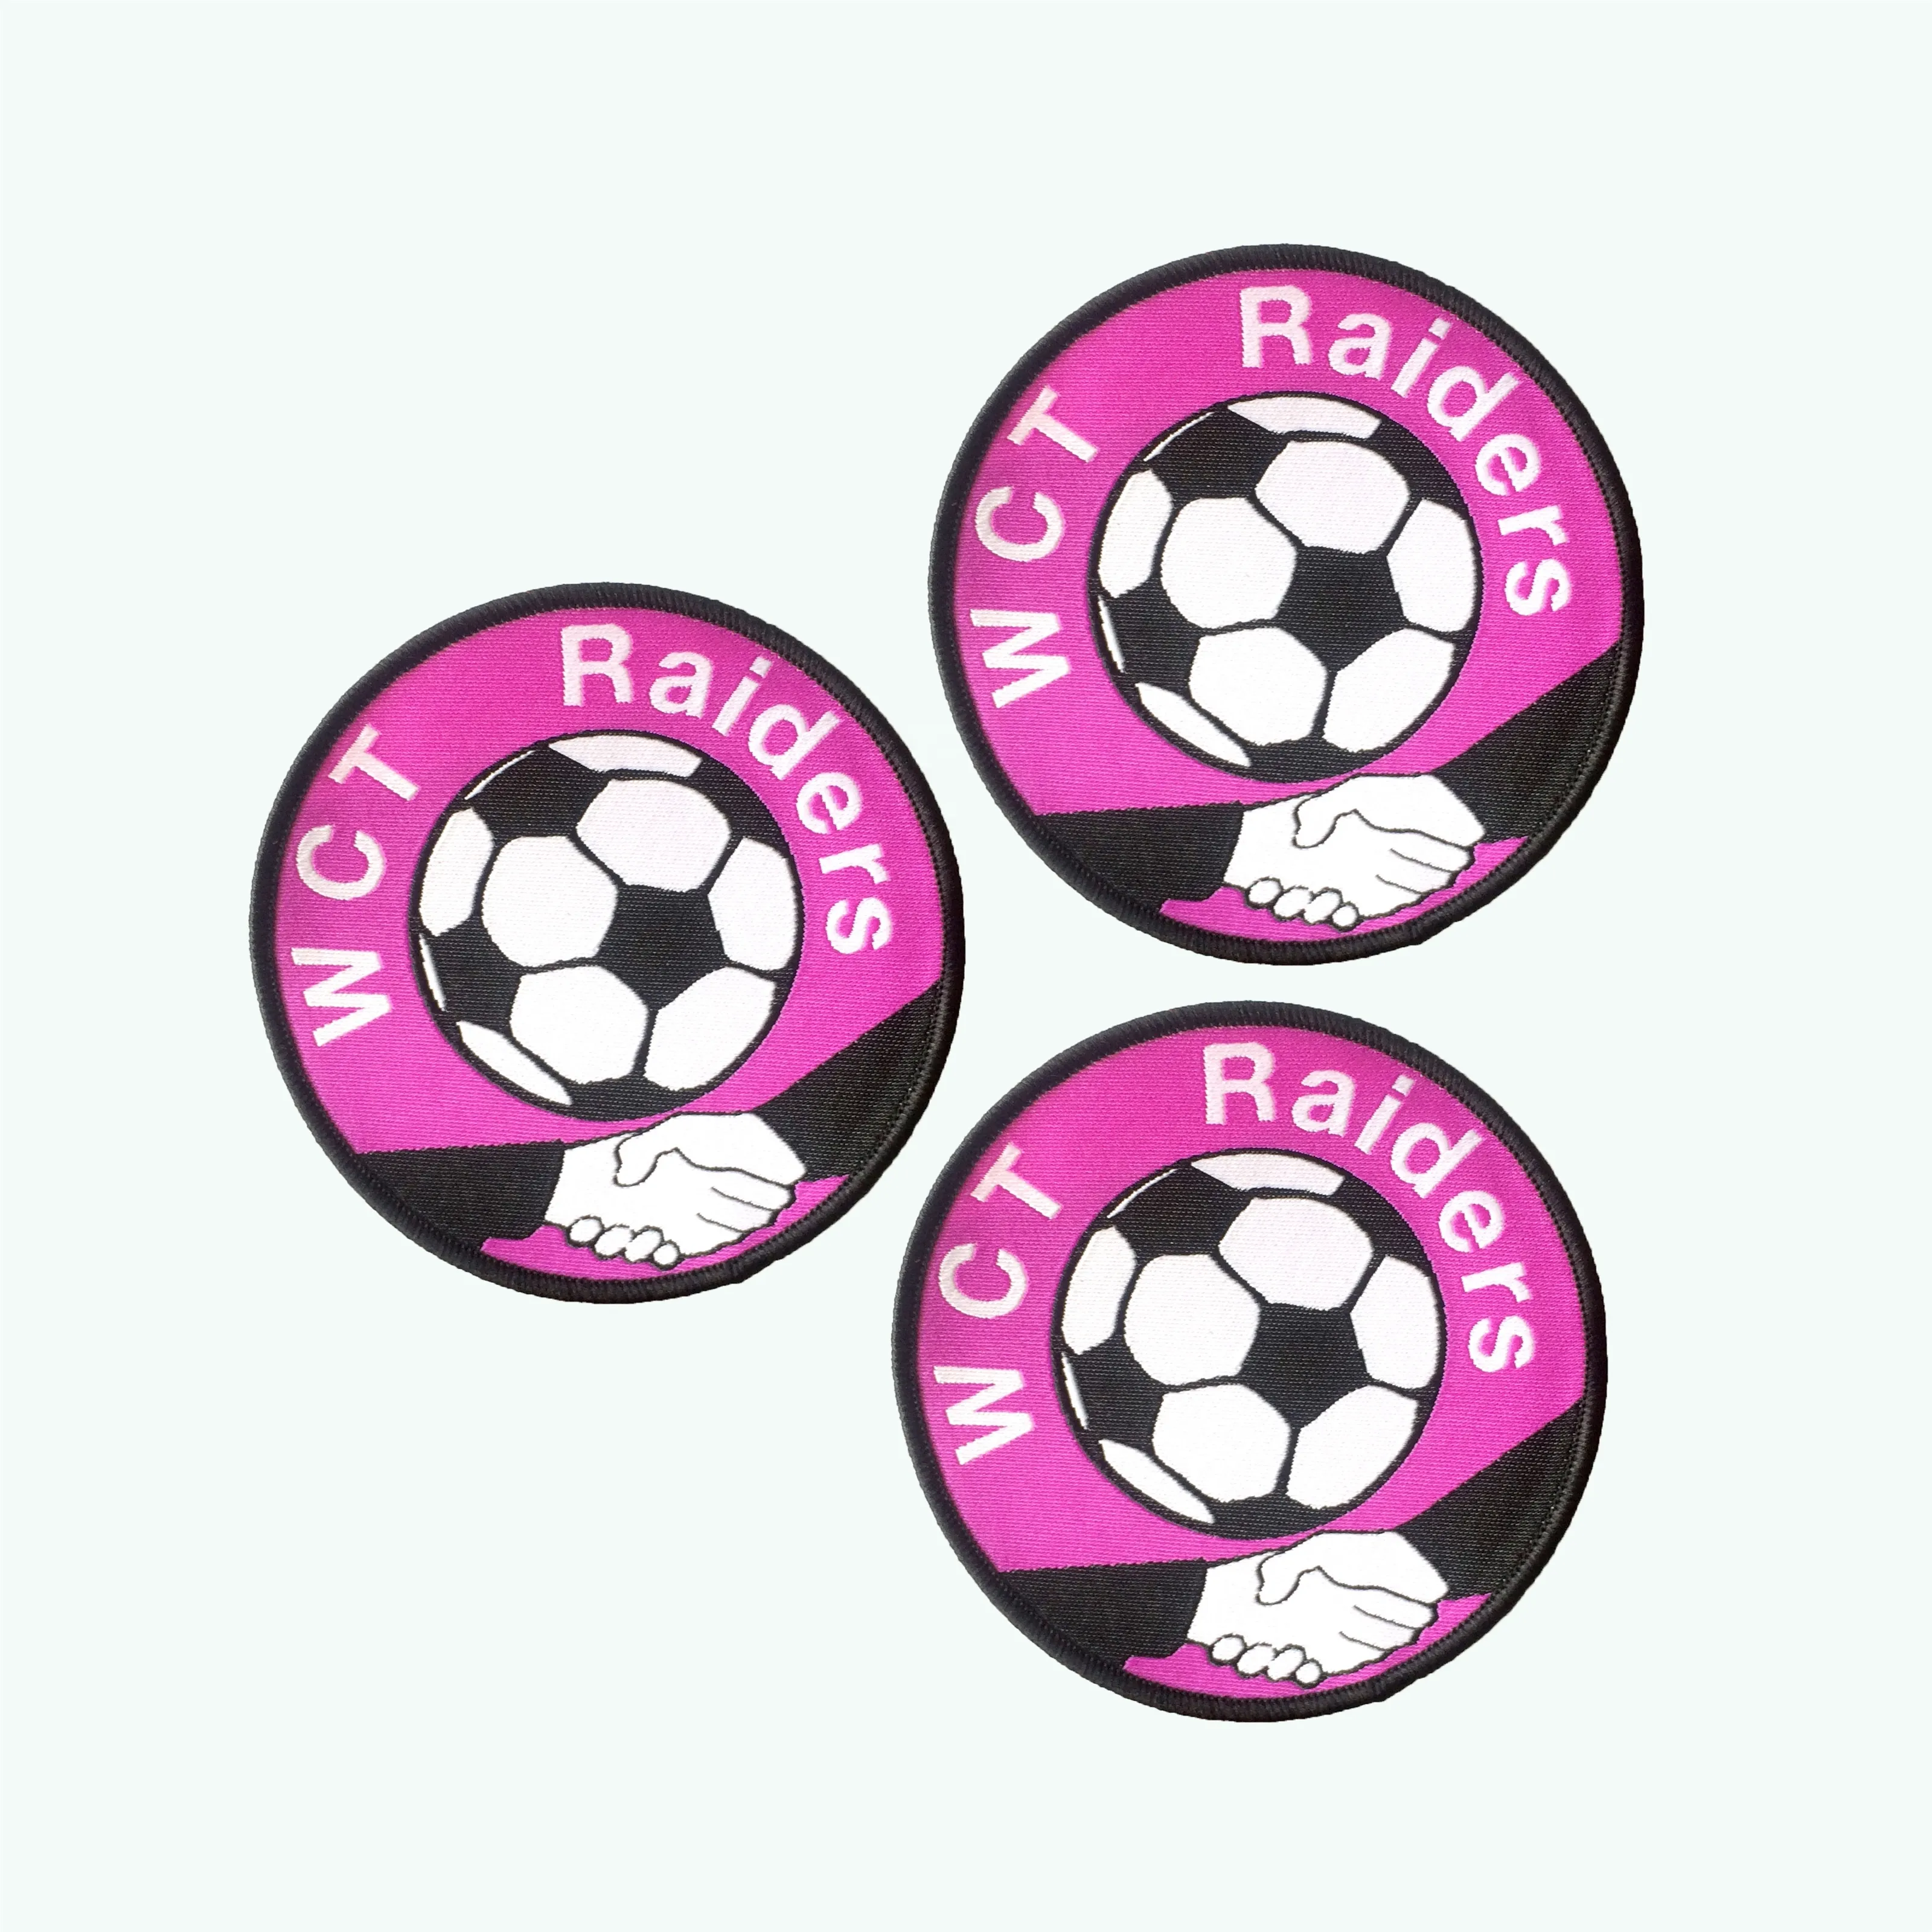 Эко Утюг на заказ, машина с логотипом футбольной команды, тканая спортивная ткань, нашивка и значок для униформы, одежды